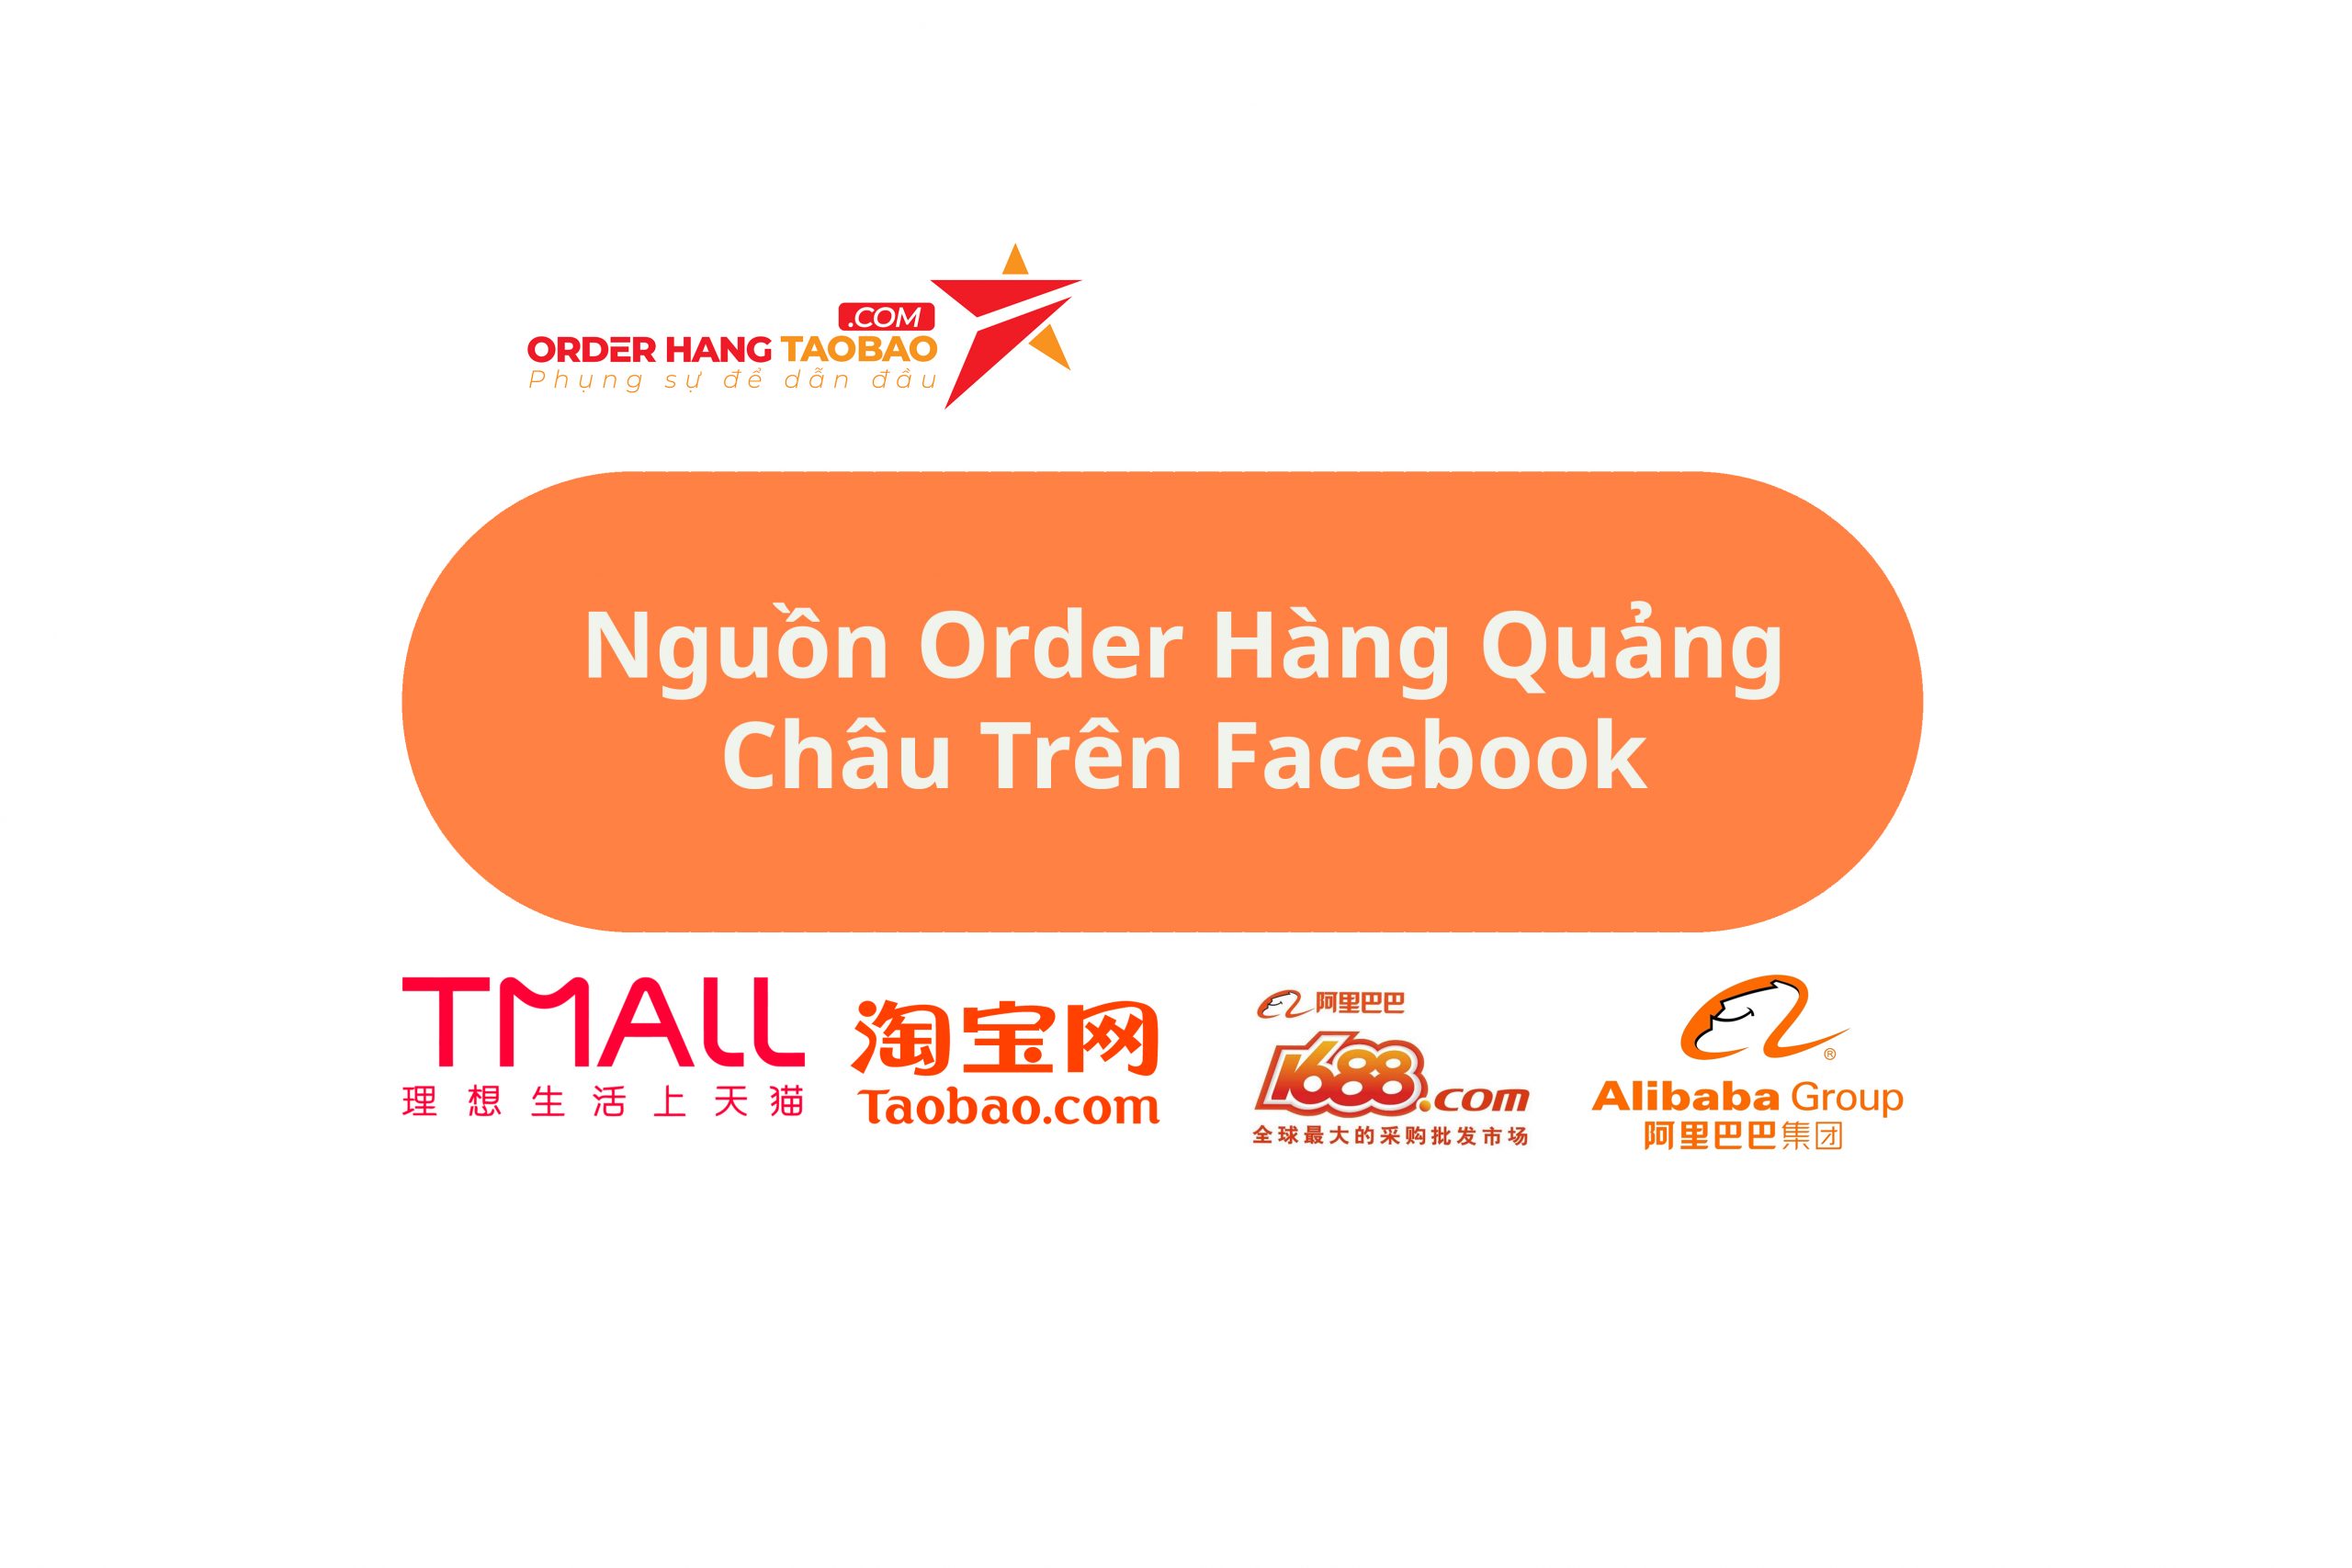 Nguồn Order Hàng Quảng Châu Trên Facebook